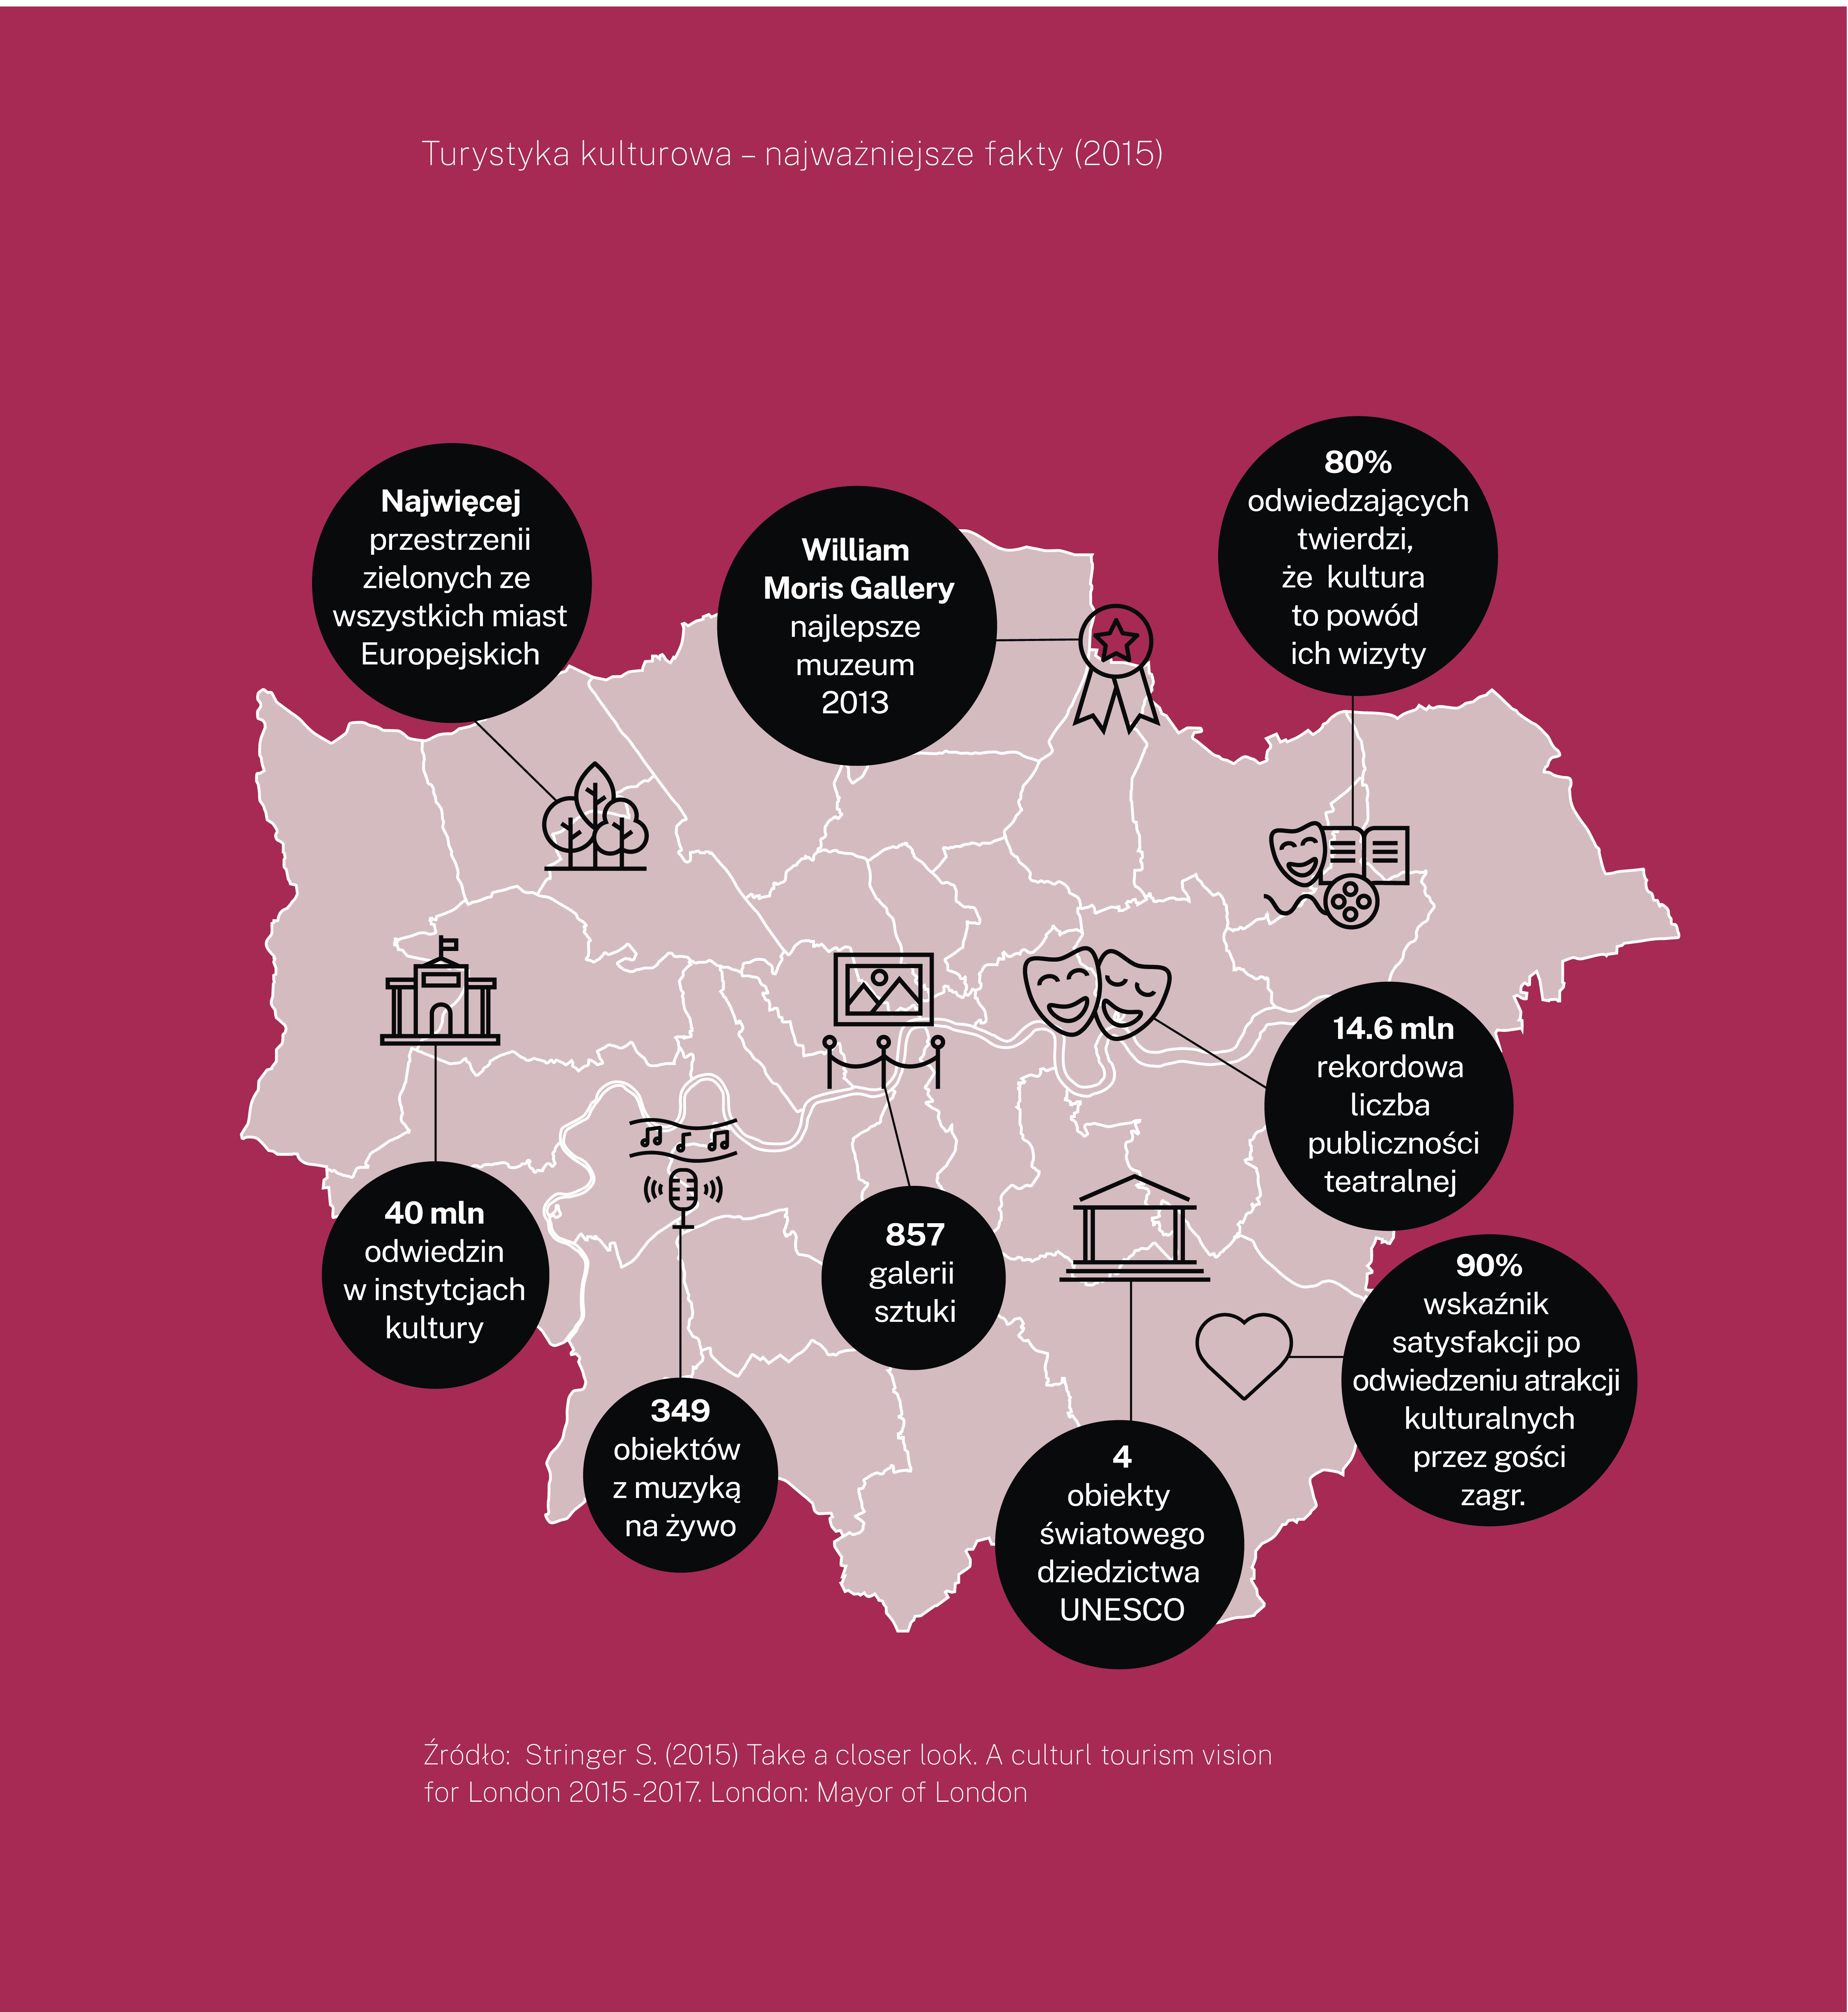 Mapa Londynu, na której naniesiono pola z informacją na temat najważniejszych faktów dotyczących turystyki kulturowej, m.in: liczba galerii sztuki (857)